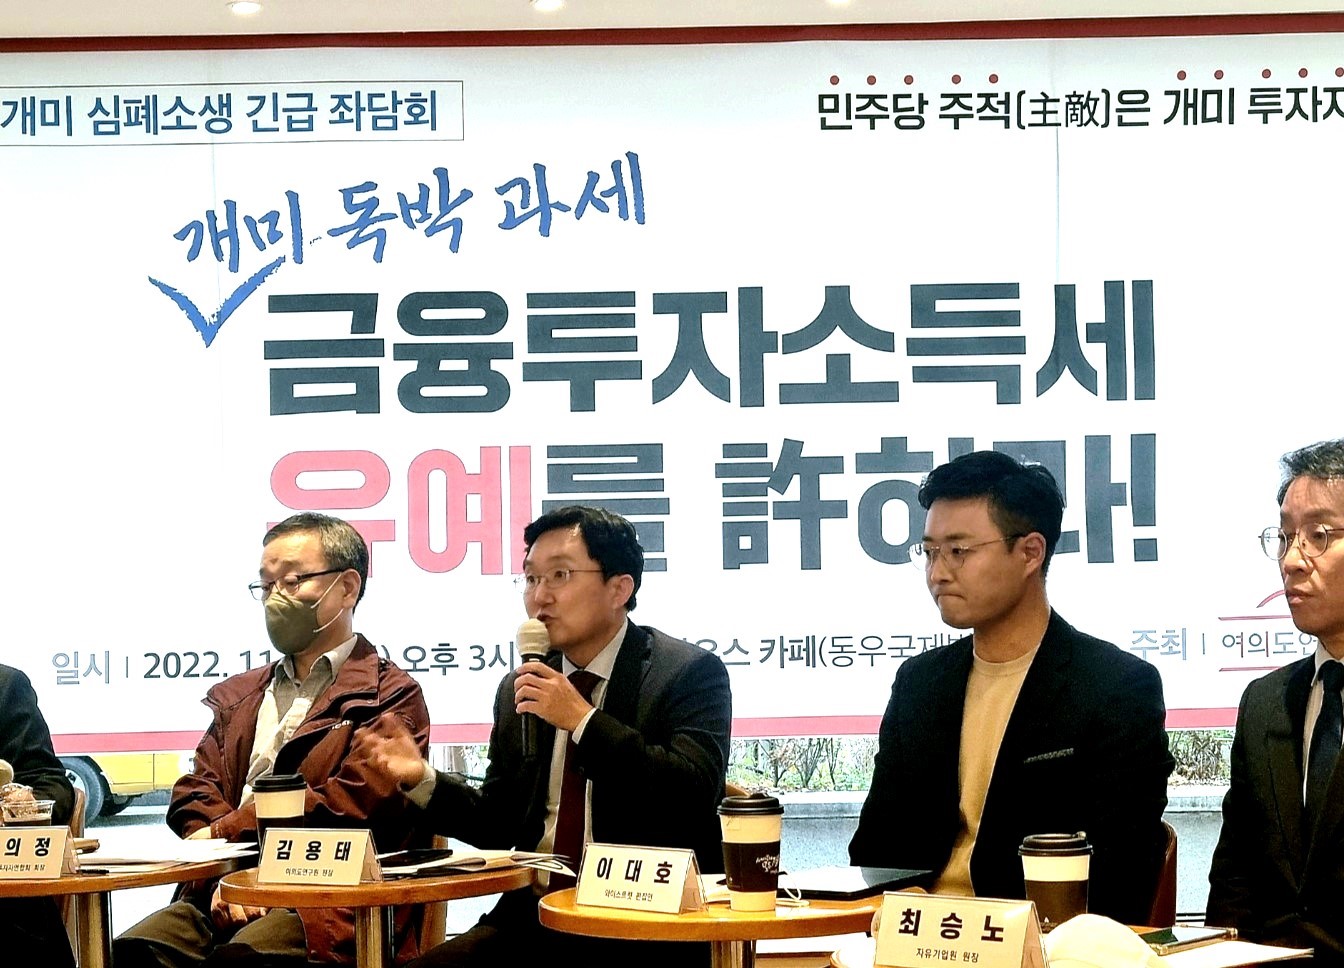 김용태(왼쪽 두번째) 여의도연구원장이 17일 여의도의 한 카페에서 열린 ‘개미 심폐소생 긴급 좌담회’에서 발언하고 있다. 고혜지 기자